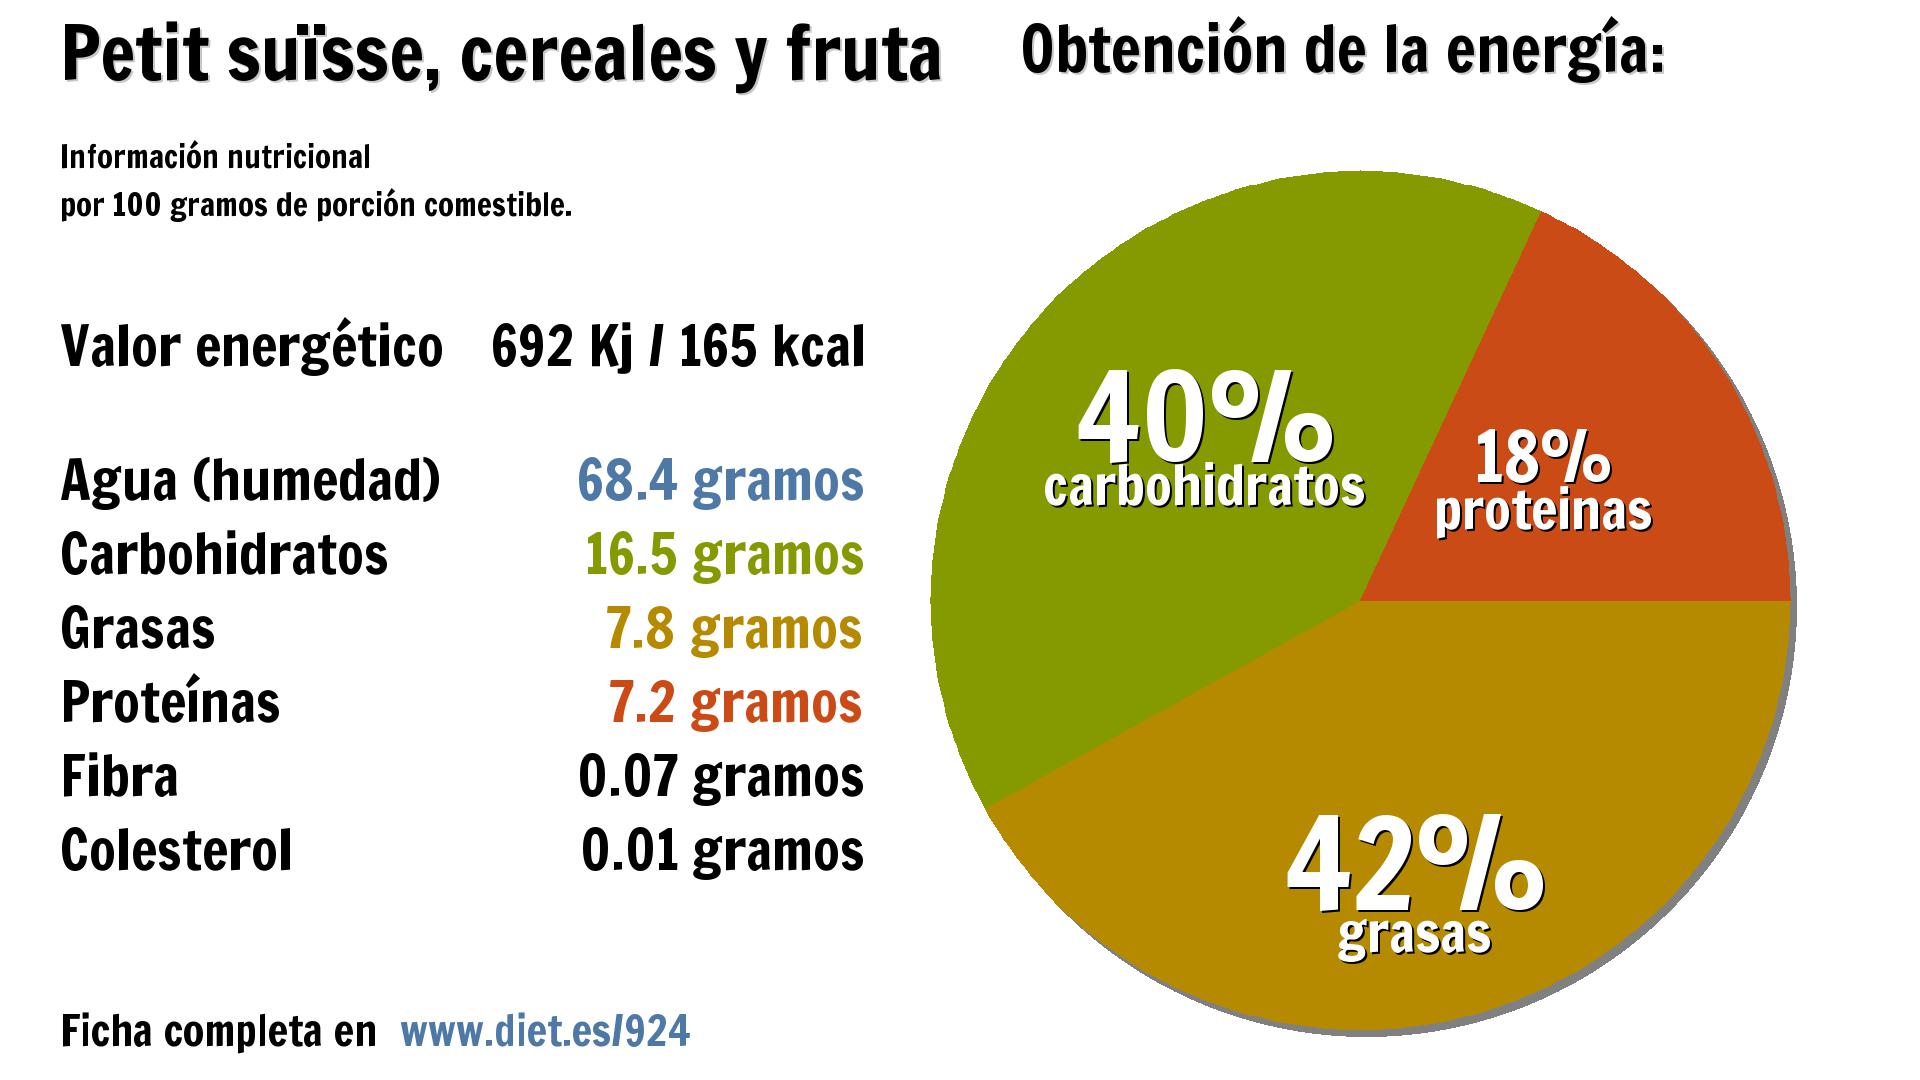 Petit suïsse, cereales y fruta: energía 692 Kj, agua 68 g., carbohidratos 17 g., grasas 8 g. y proteínas 7 g.